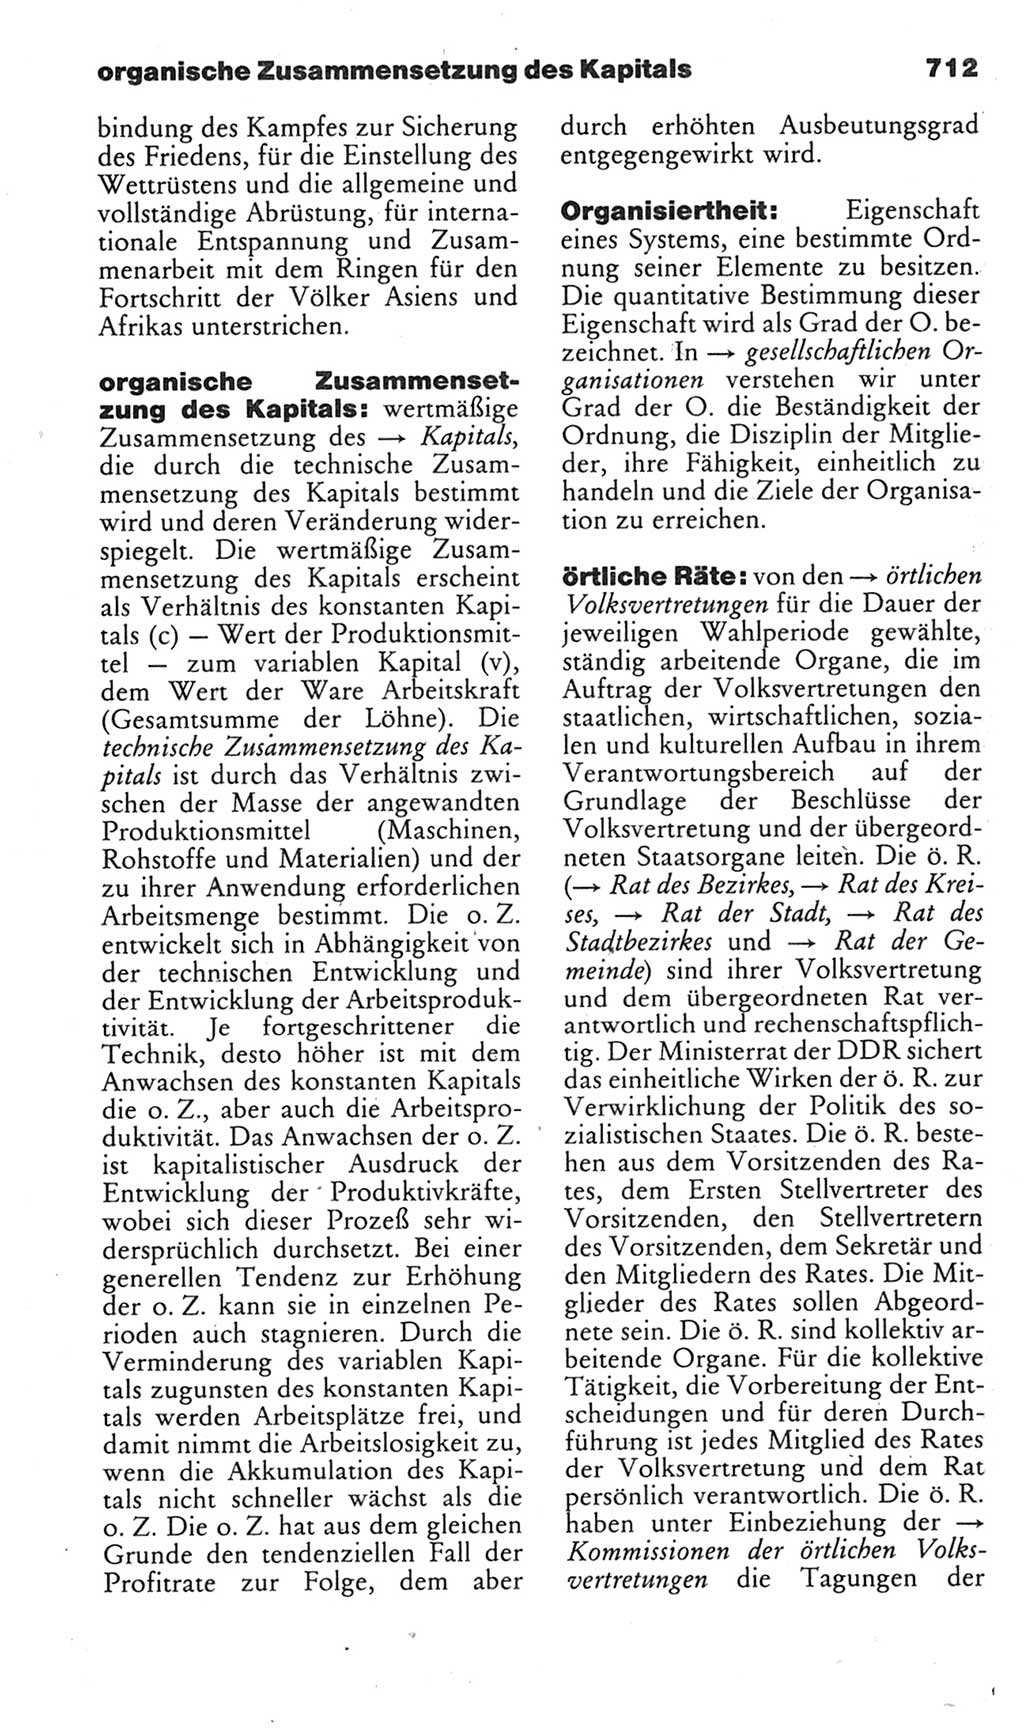 Kleines politisches Wörterbuch [Deutsche Demokratische Republik (DDR)] 1985, Seite 712 (Kl. pol. Wb. DDR 1985, S. 712)